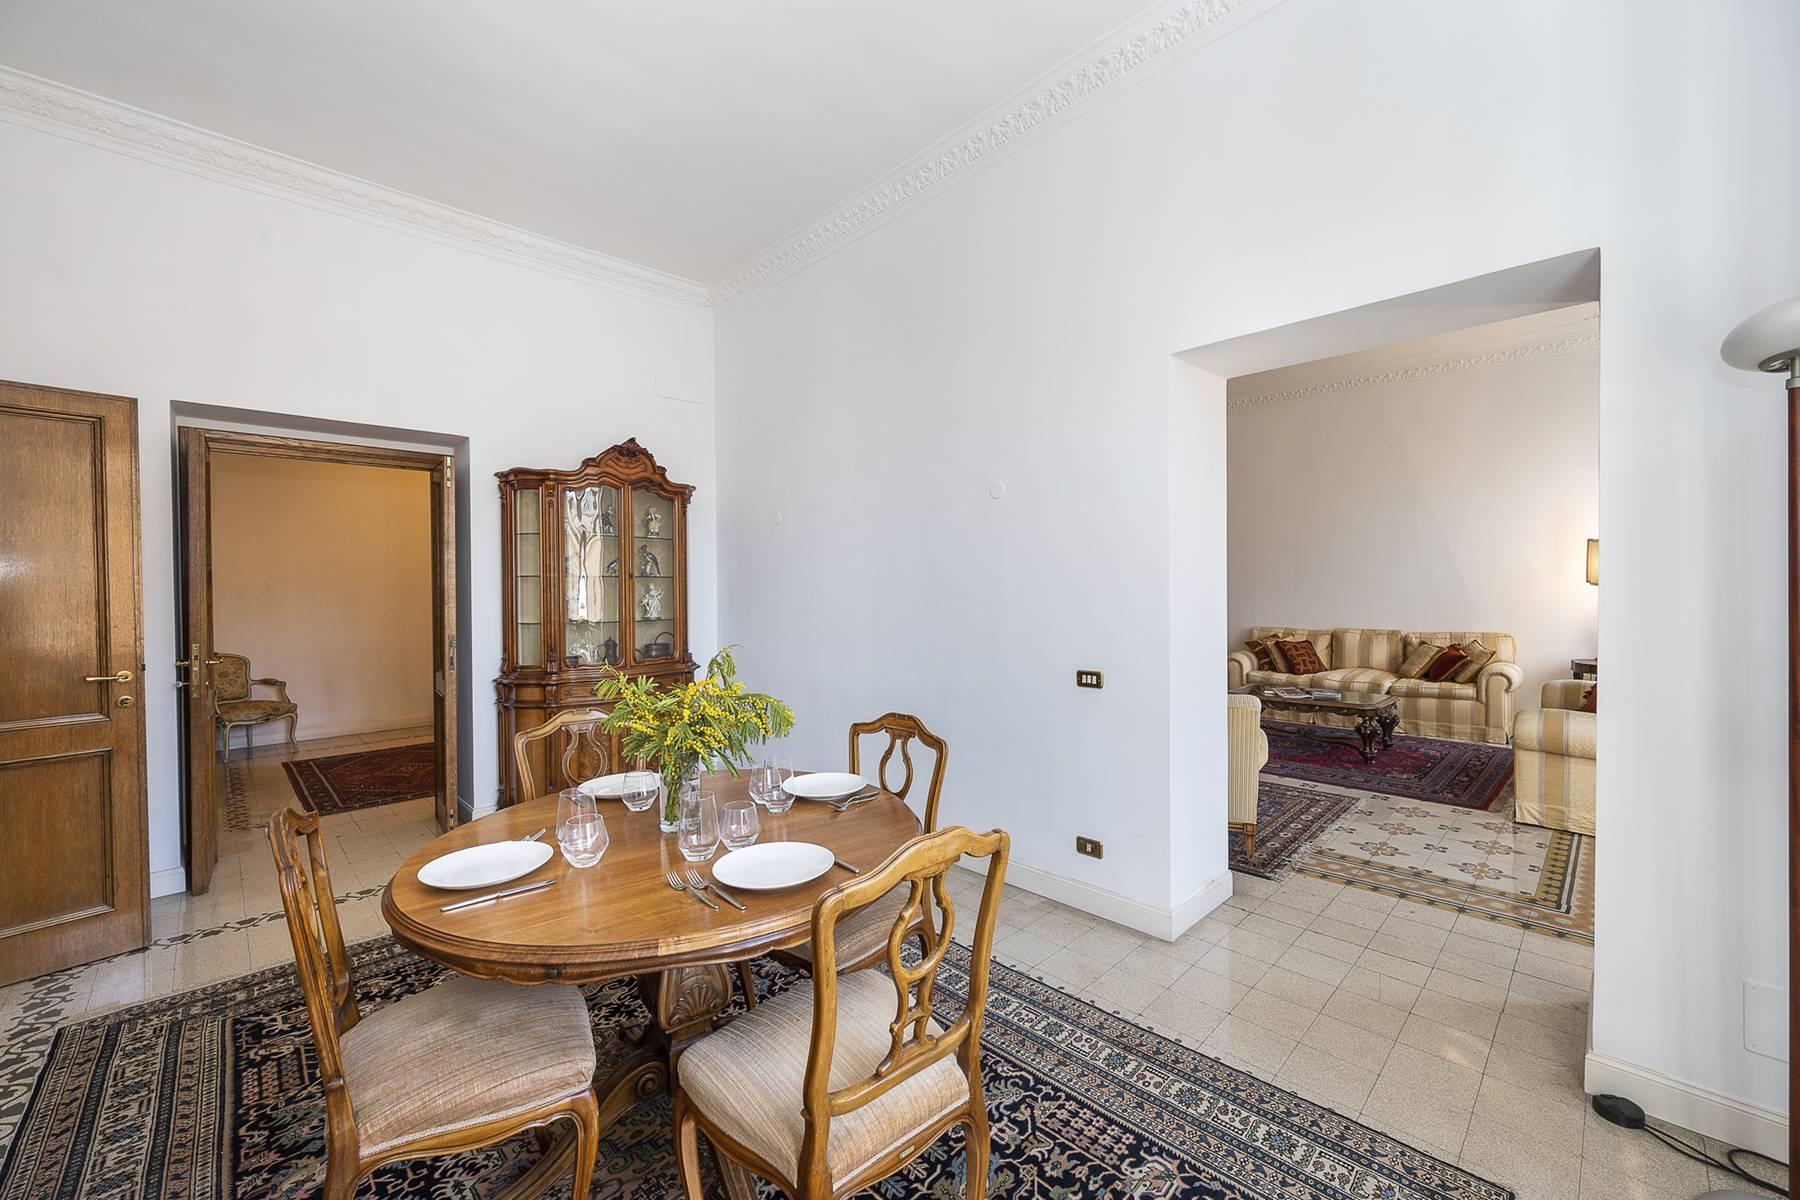 Appartement élégant situé dans un prestigieux bâtiment historique à Trinità de' Monti - 11